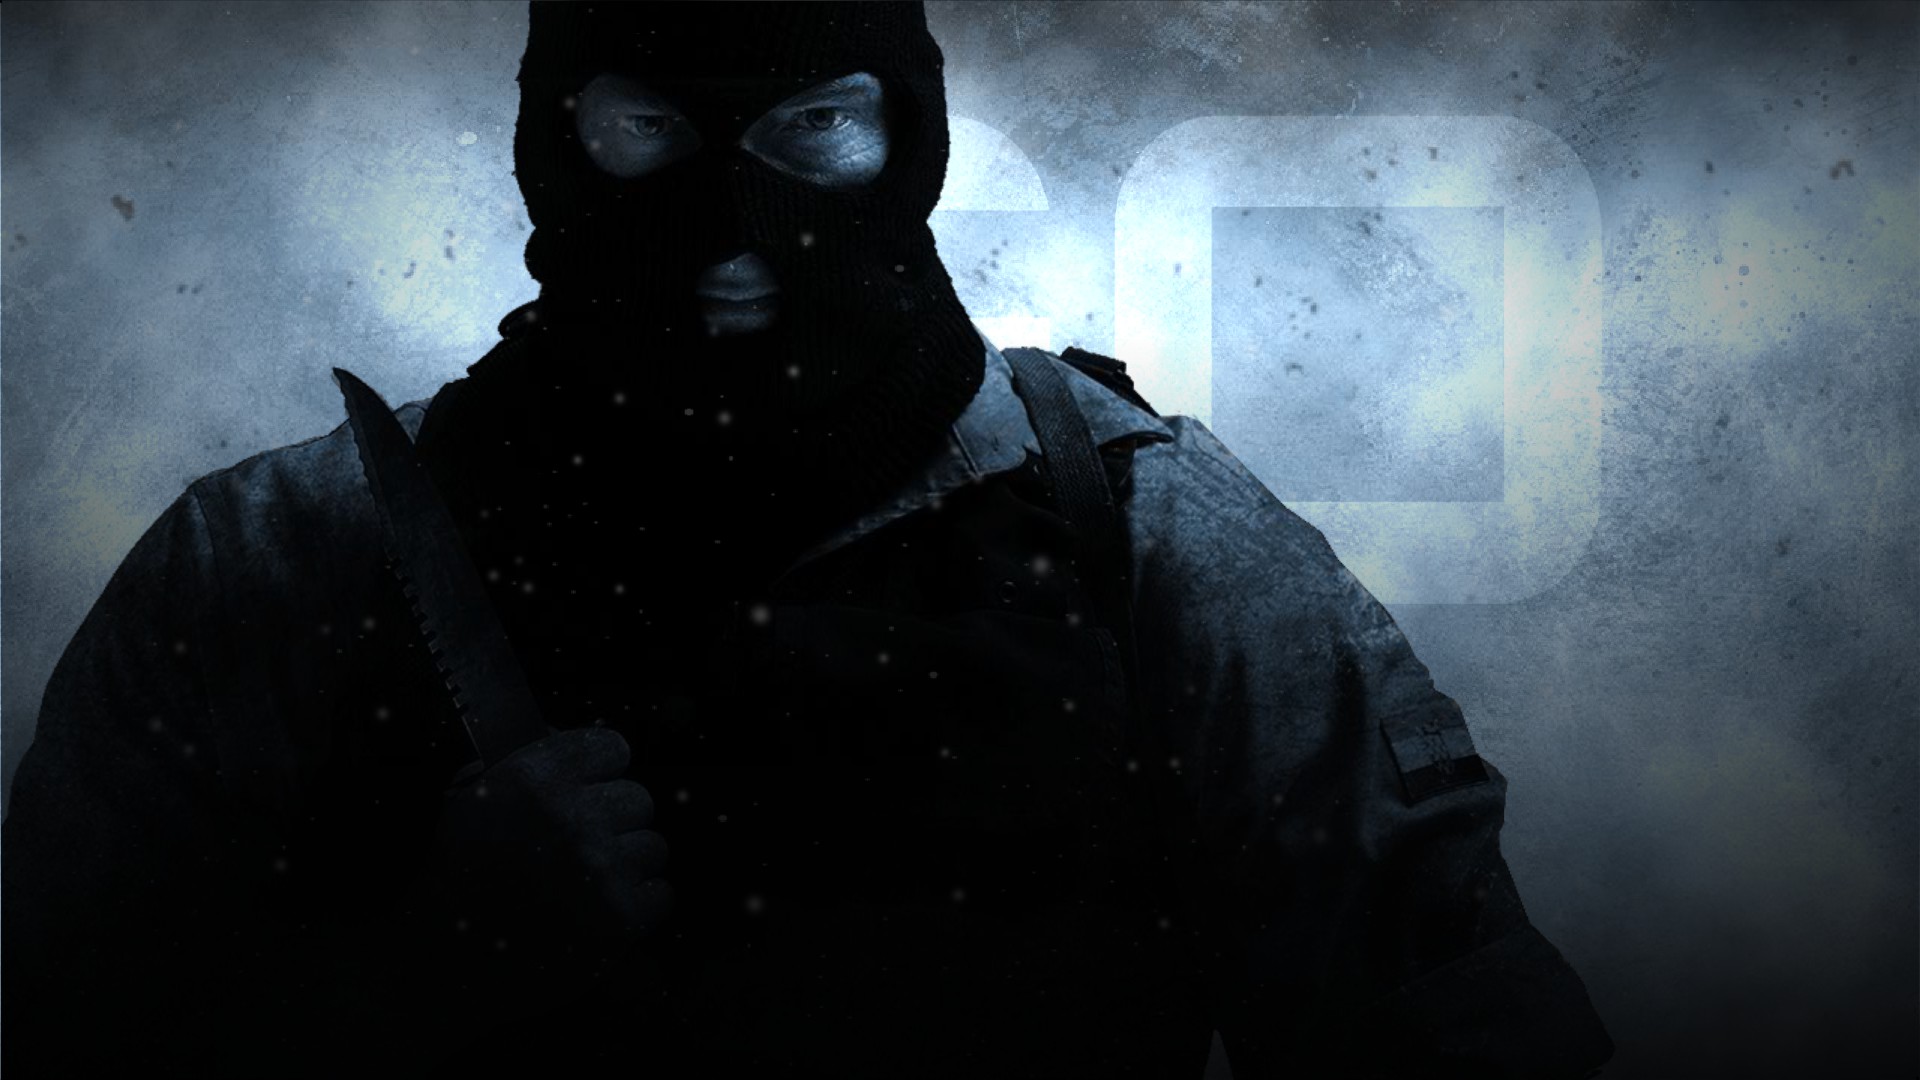 CS:GO Terrorist Wallpaper by dx0b on DeviantArt